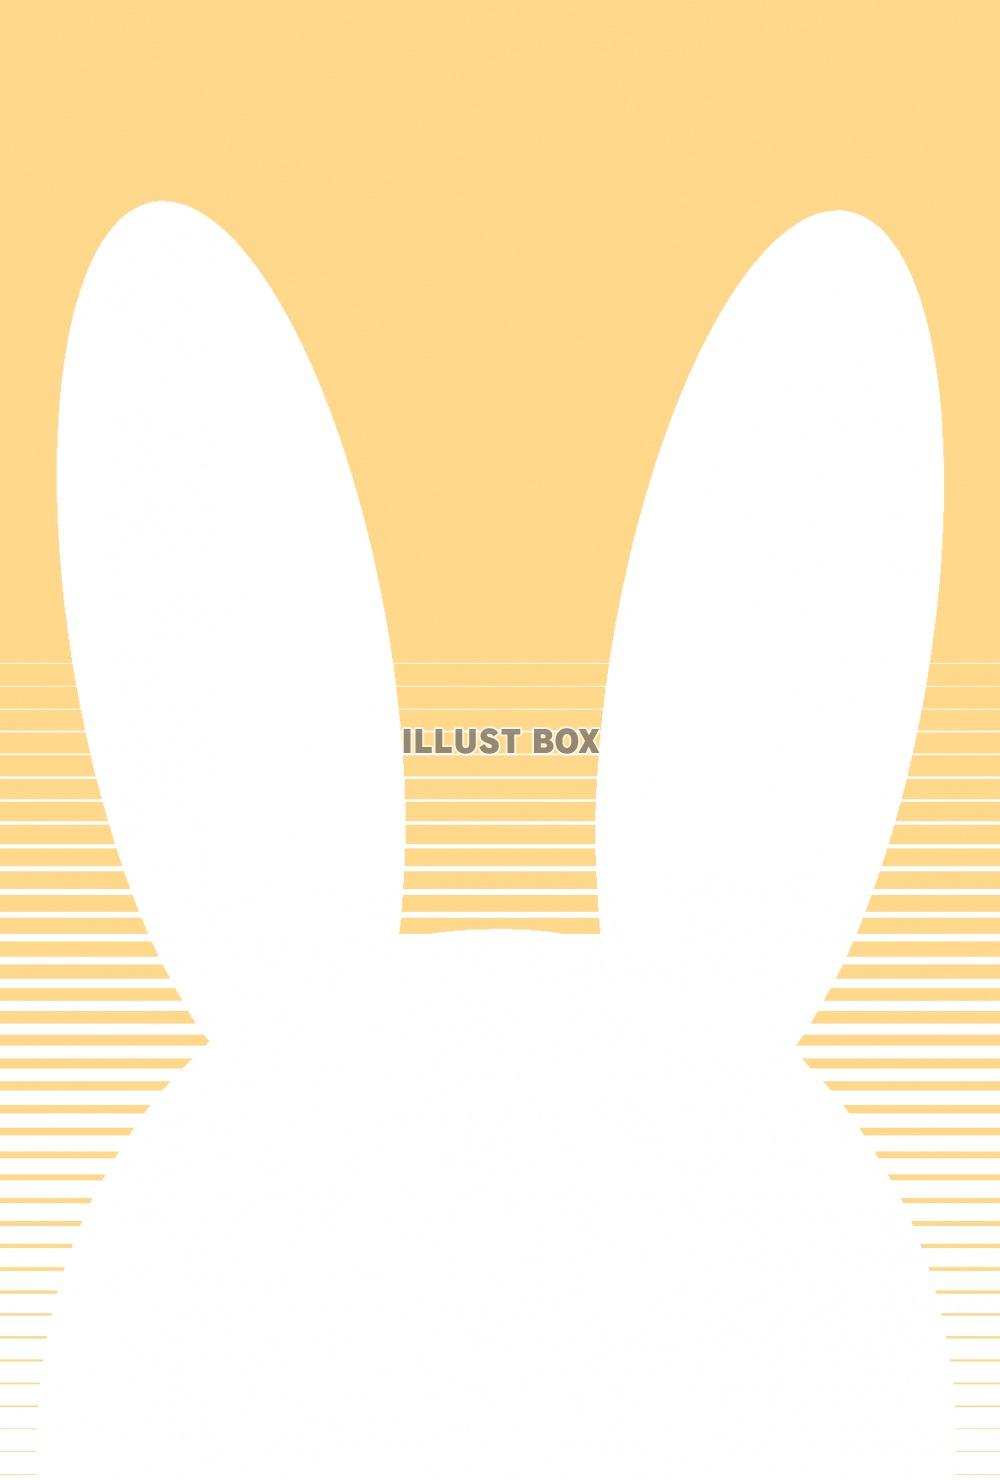 年賀状用シンプルなウサギ葉書（サイズ 148×100mm）